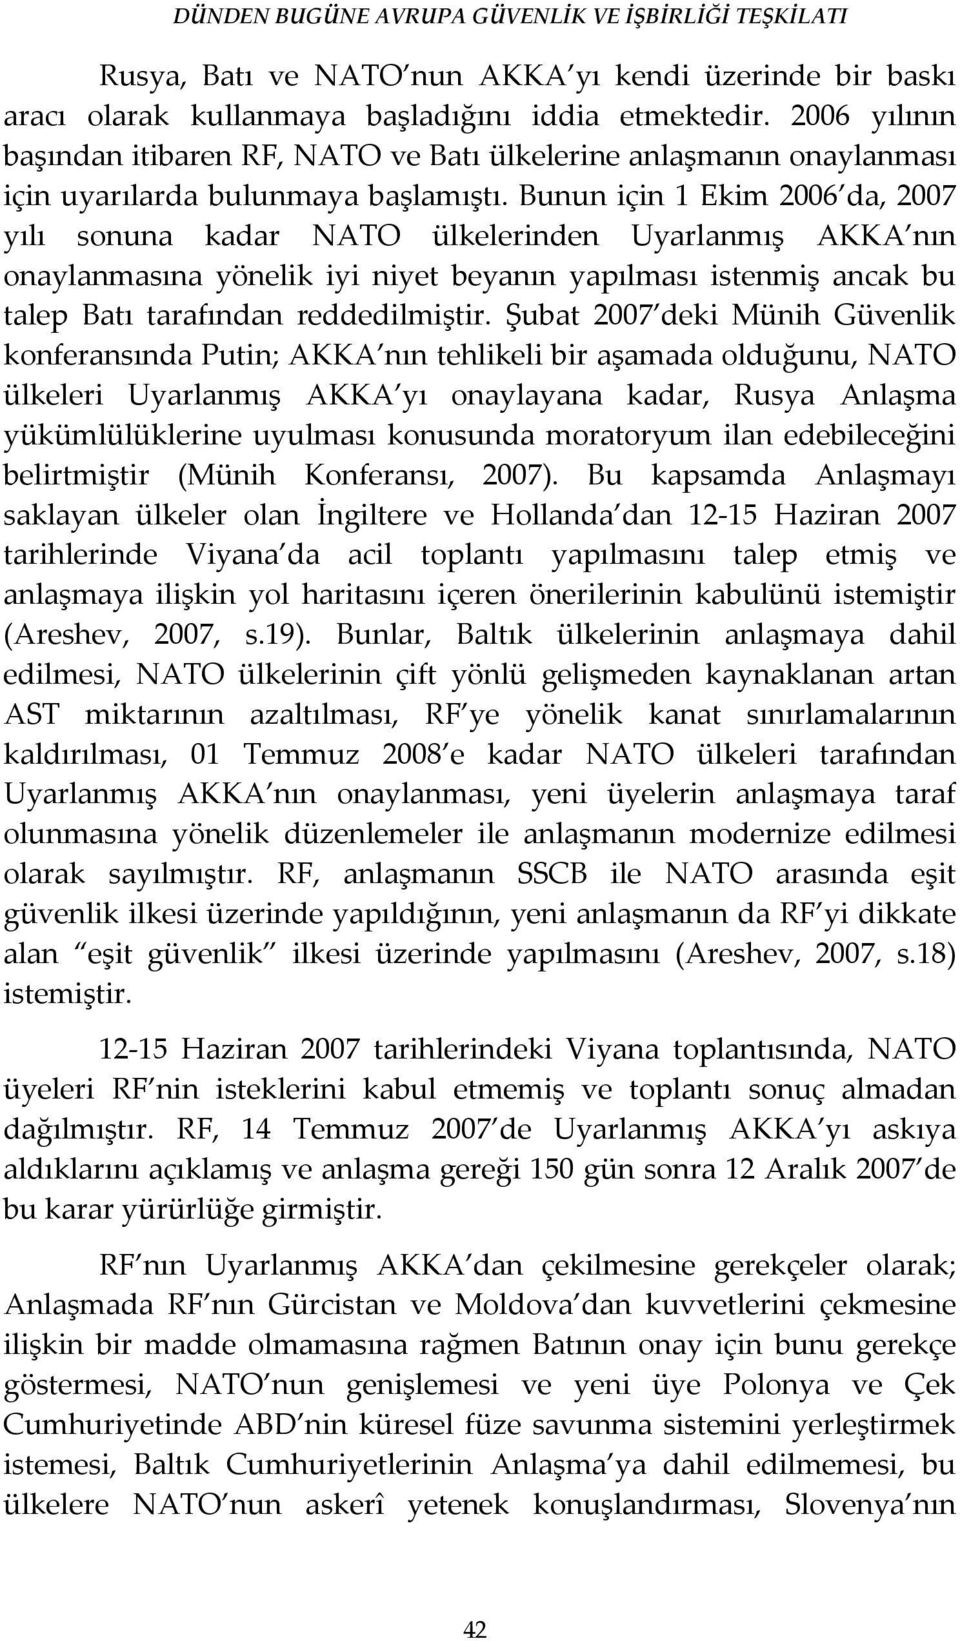 Bunun için 1 Ekim 2006 da, 2007 yılı sonuna kadar NATO ülkelerinden Uyarlanmış AKKA nın onaylanmasına yönelik iyi niyet beyanın yapılması istenmiş ancak bu talep Batı tarafından reddedilmiştir.